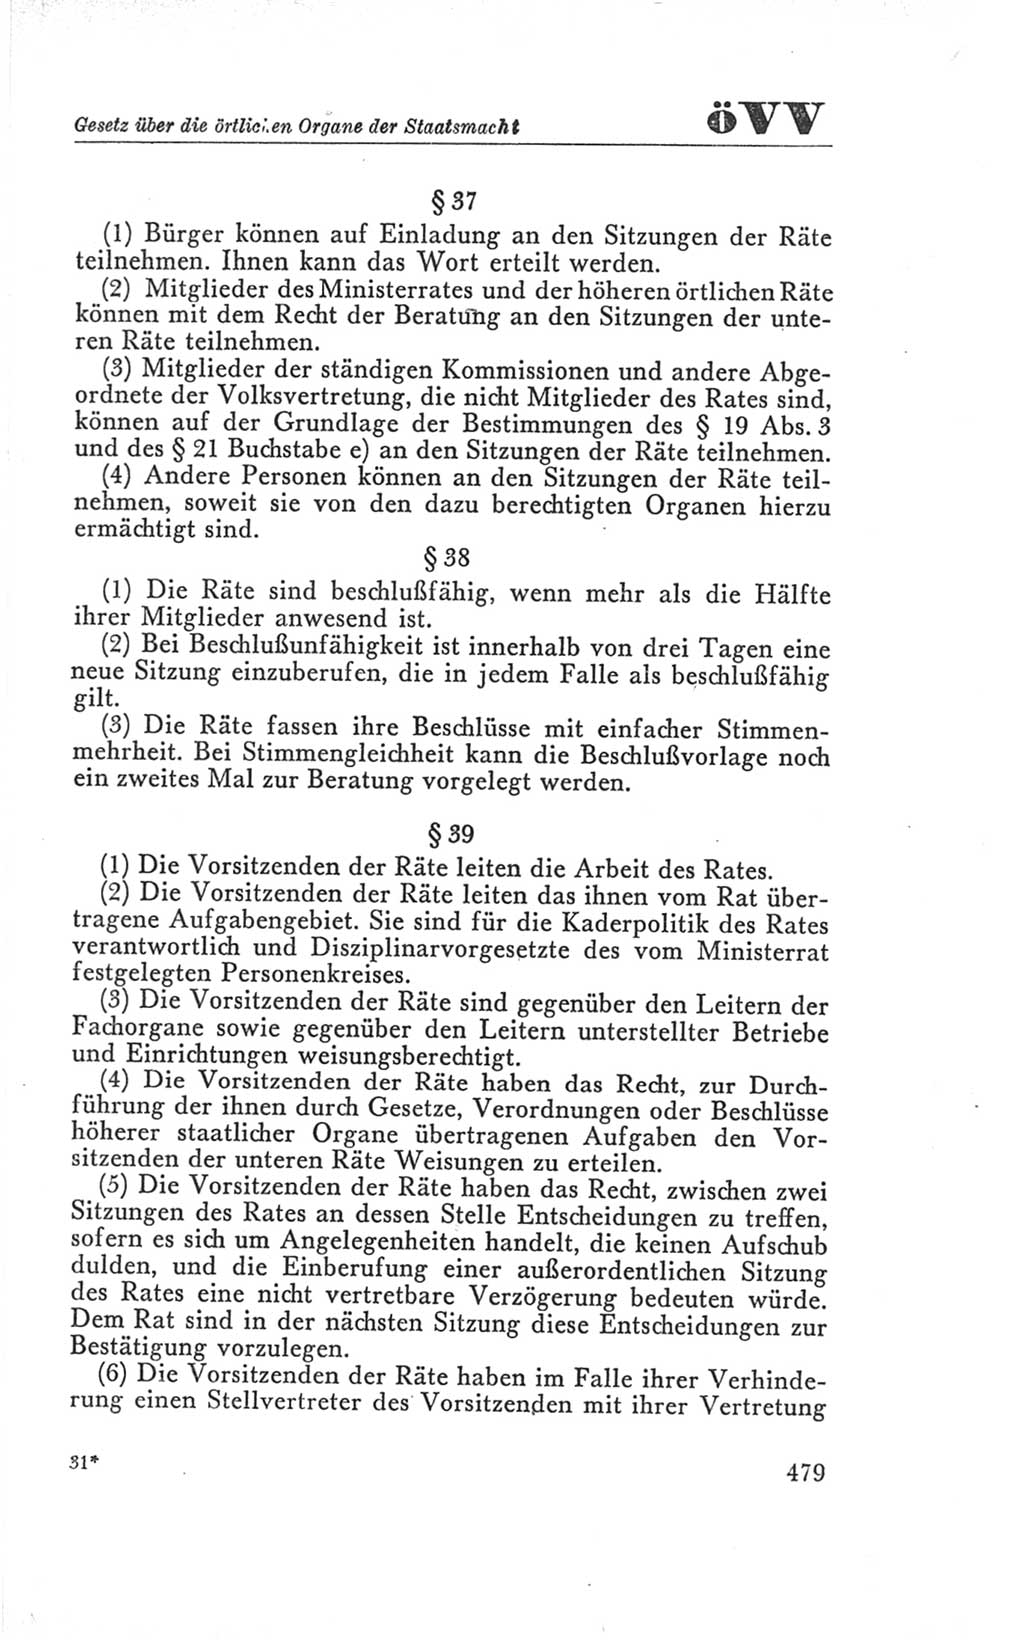 Handbuch der Volkskammer (VK) der Deutschen Demokratischen Republik (DDR), 3. Wahlperiode 1958-1963, Seite 479 (Hdb. VK. DDR 3. WP. 1958-1963, S. 479)